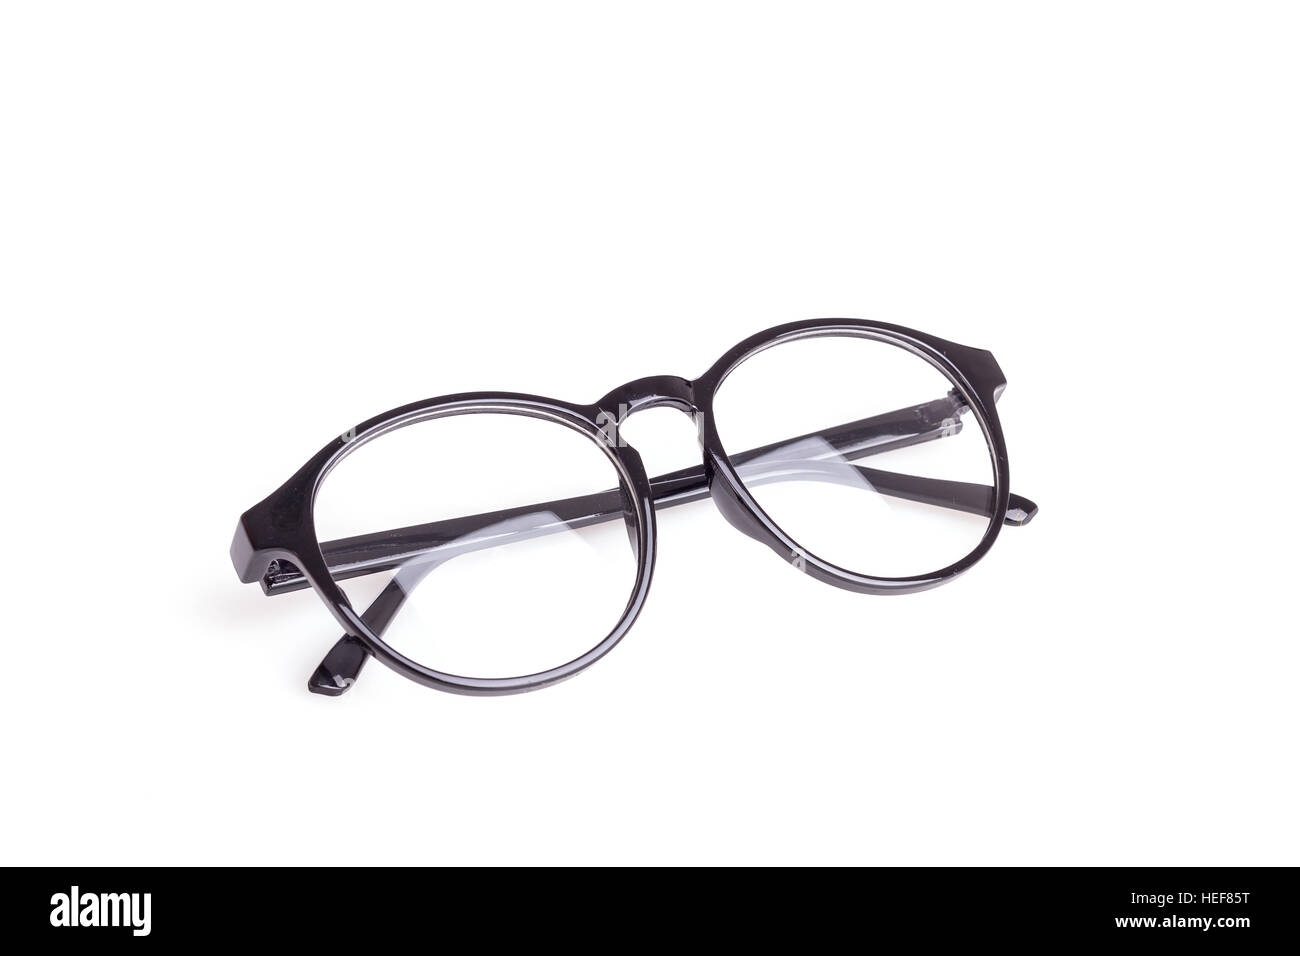 Close up black eye glasses isolated on white background Stock Photo